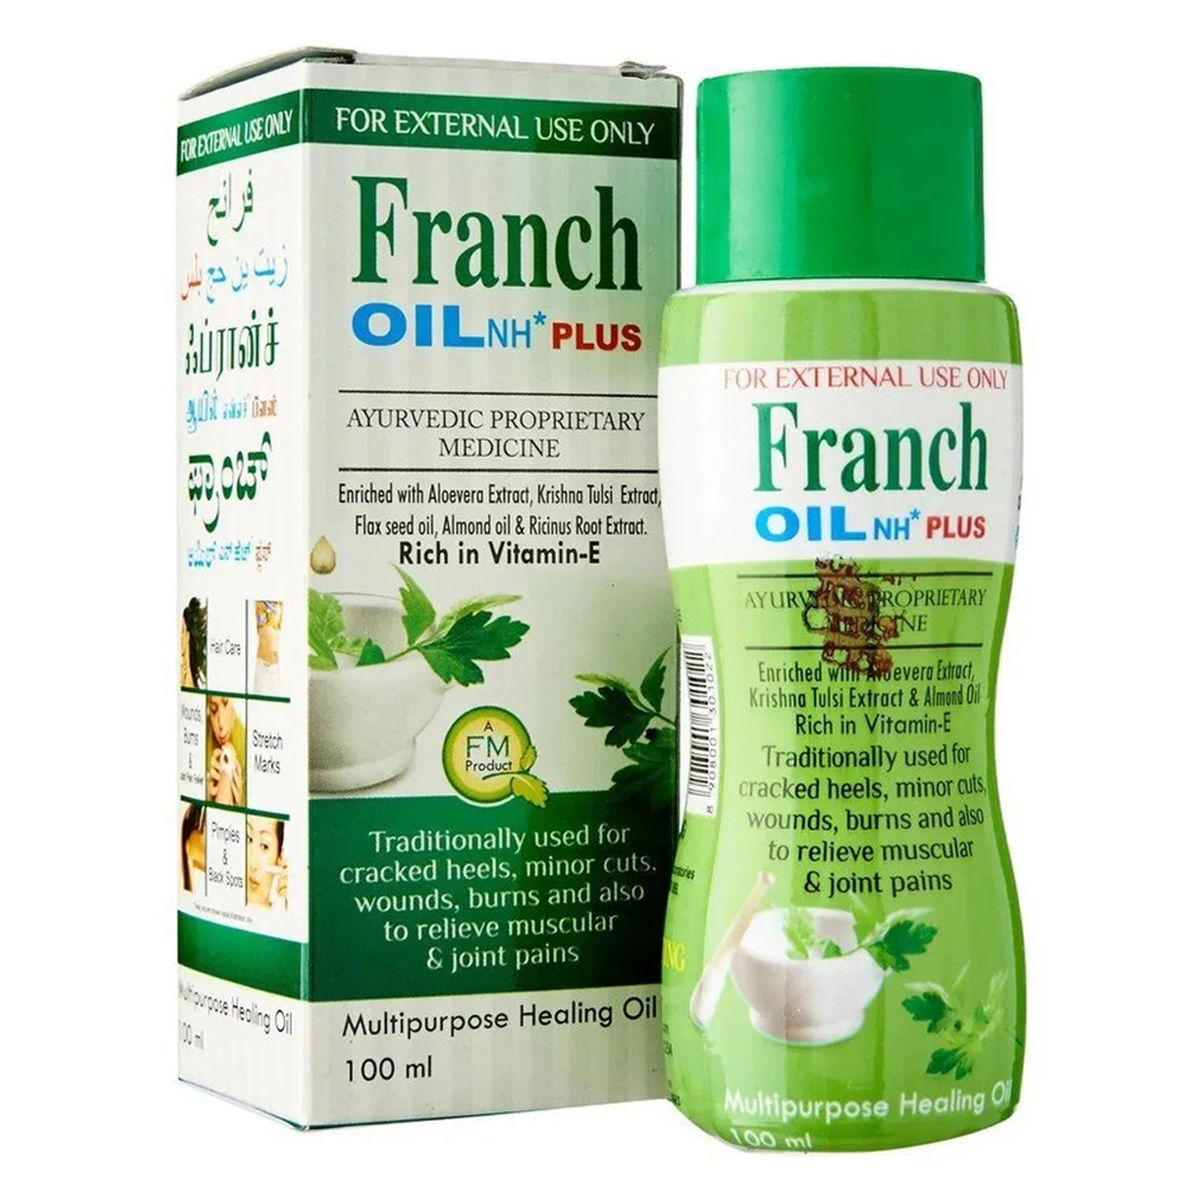 Buy Franch Multipurpose Healing Oil, 100 ml Online